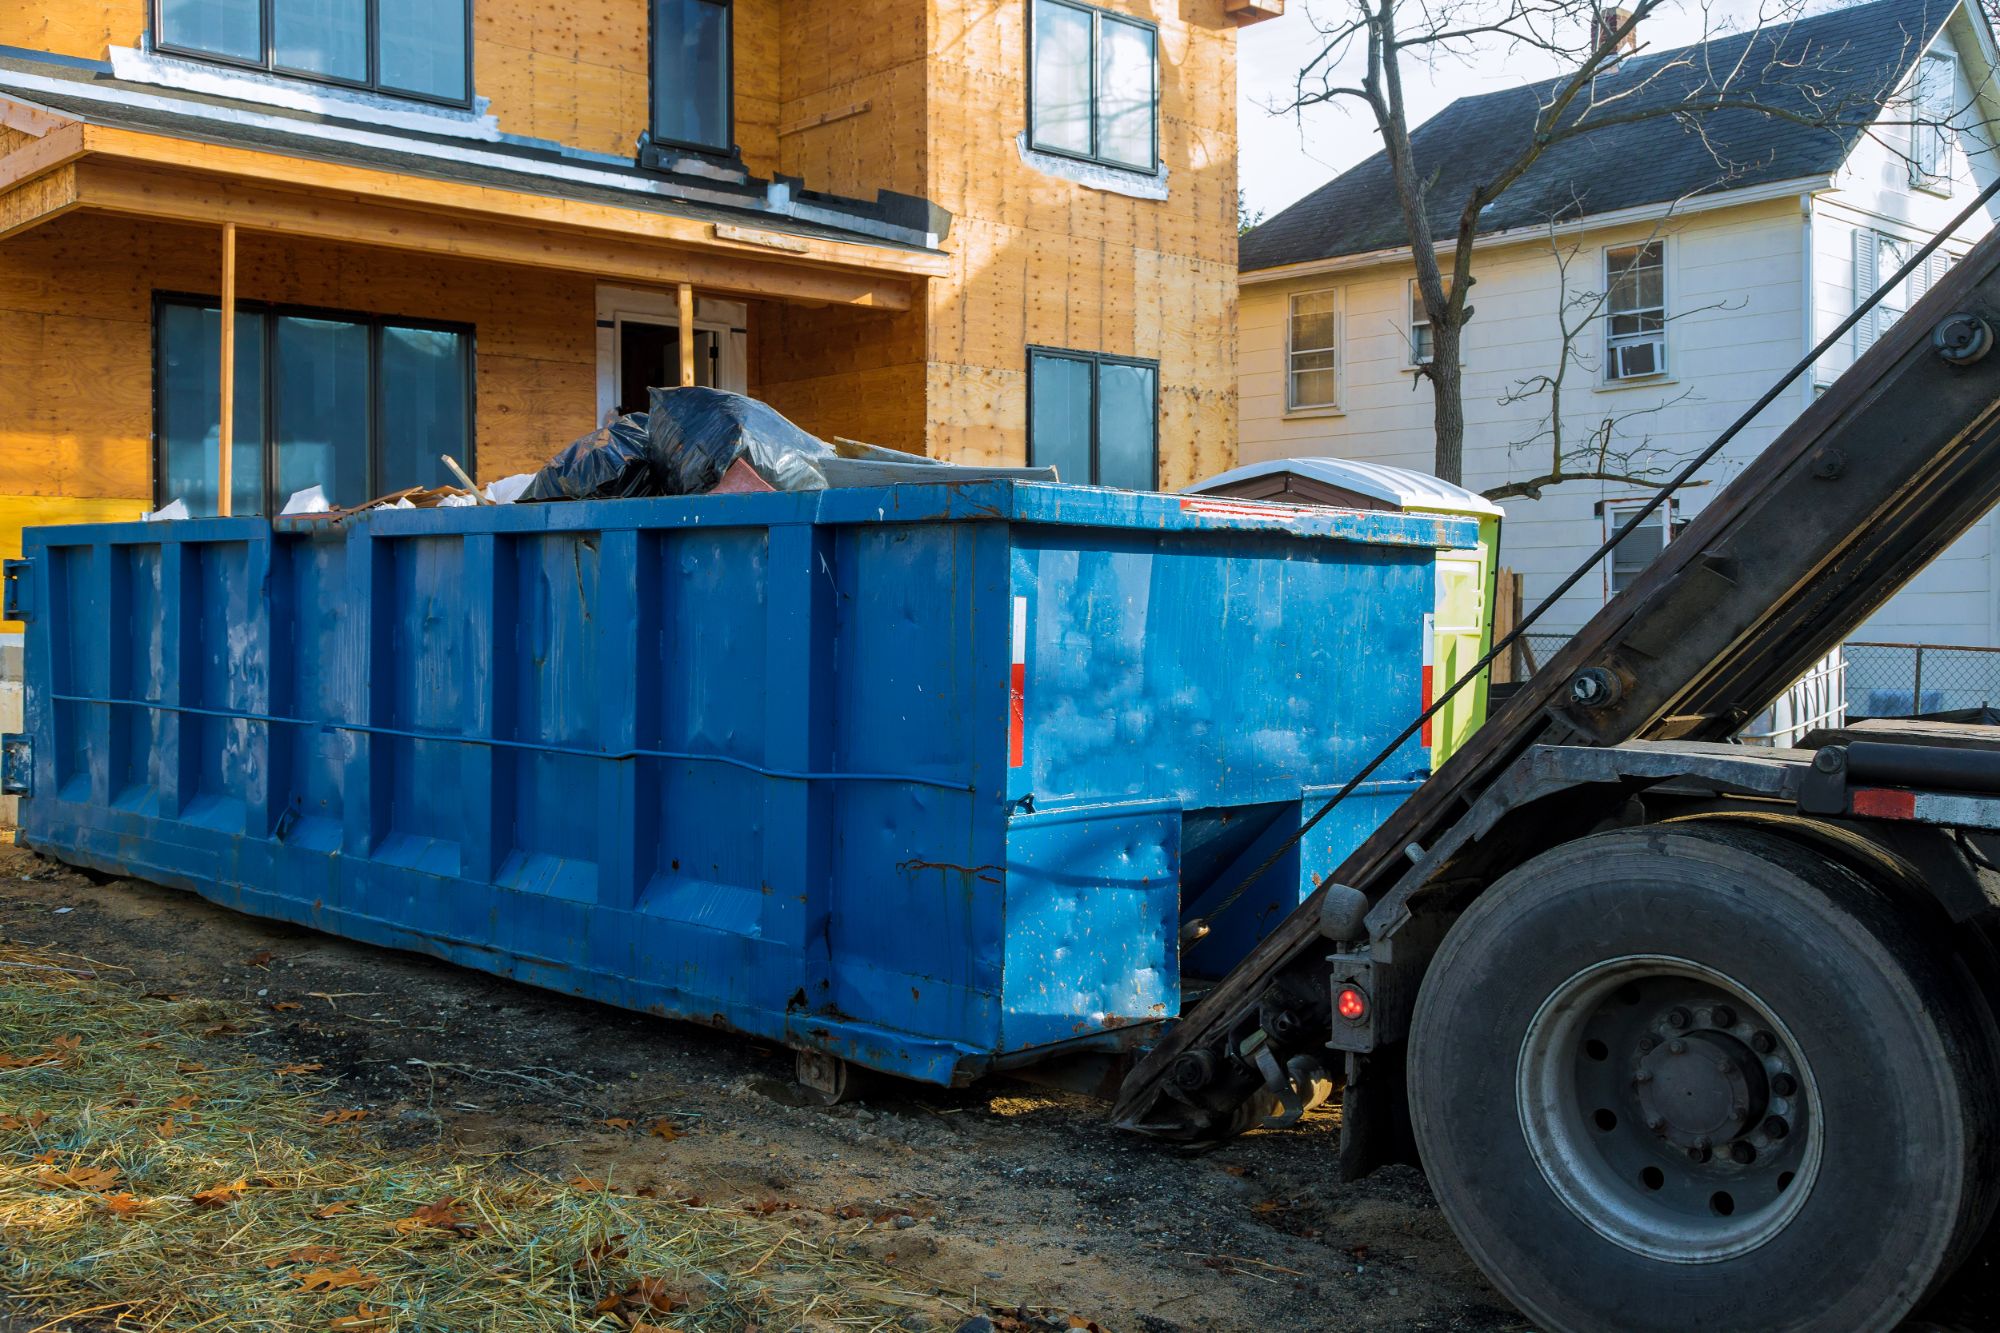 ACR Dumpsters' efficient service in Allen Park